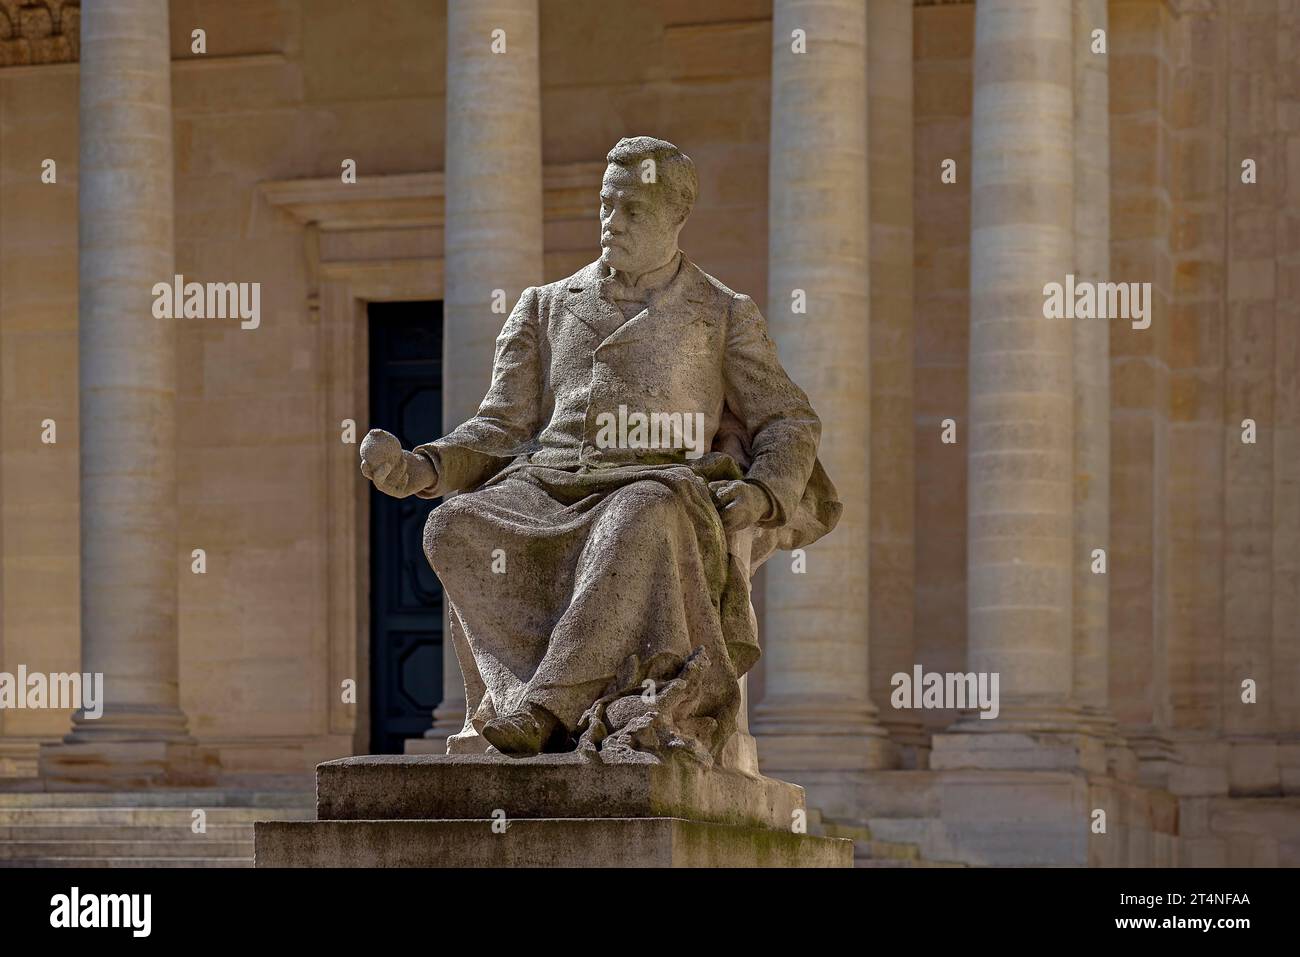 Monumento a Luis Pasteur, 1822-1895, chimico e fisico francese, cortile interno della Sorbona, 47 rue des Ecoles, Parigi, Francia Foto Stock